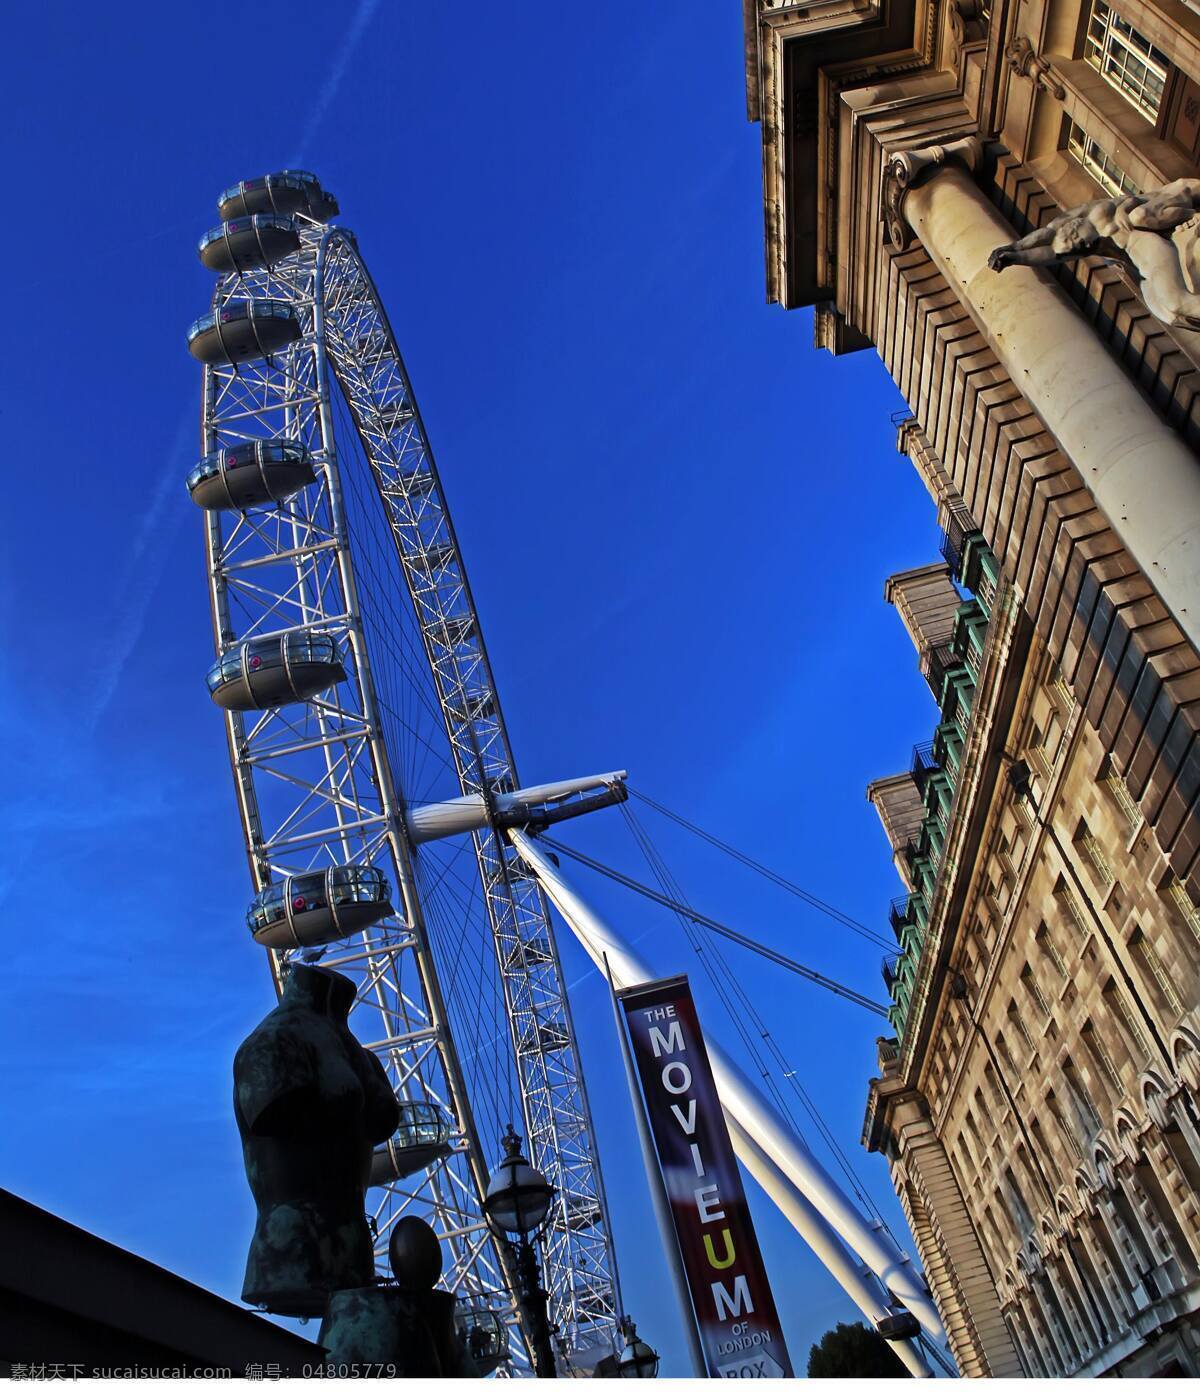 伦敦 伦敦眼摩天轮 景观轮 转轮 矗立 泰晤士河畔 饱览城市美景 大楼 广告牌 蓝天 景观 景点 伦敦风光 古都王朝 国外旅游 旅游摄影